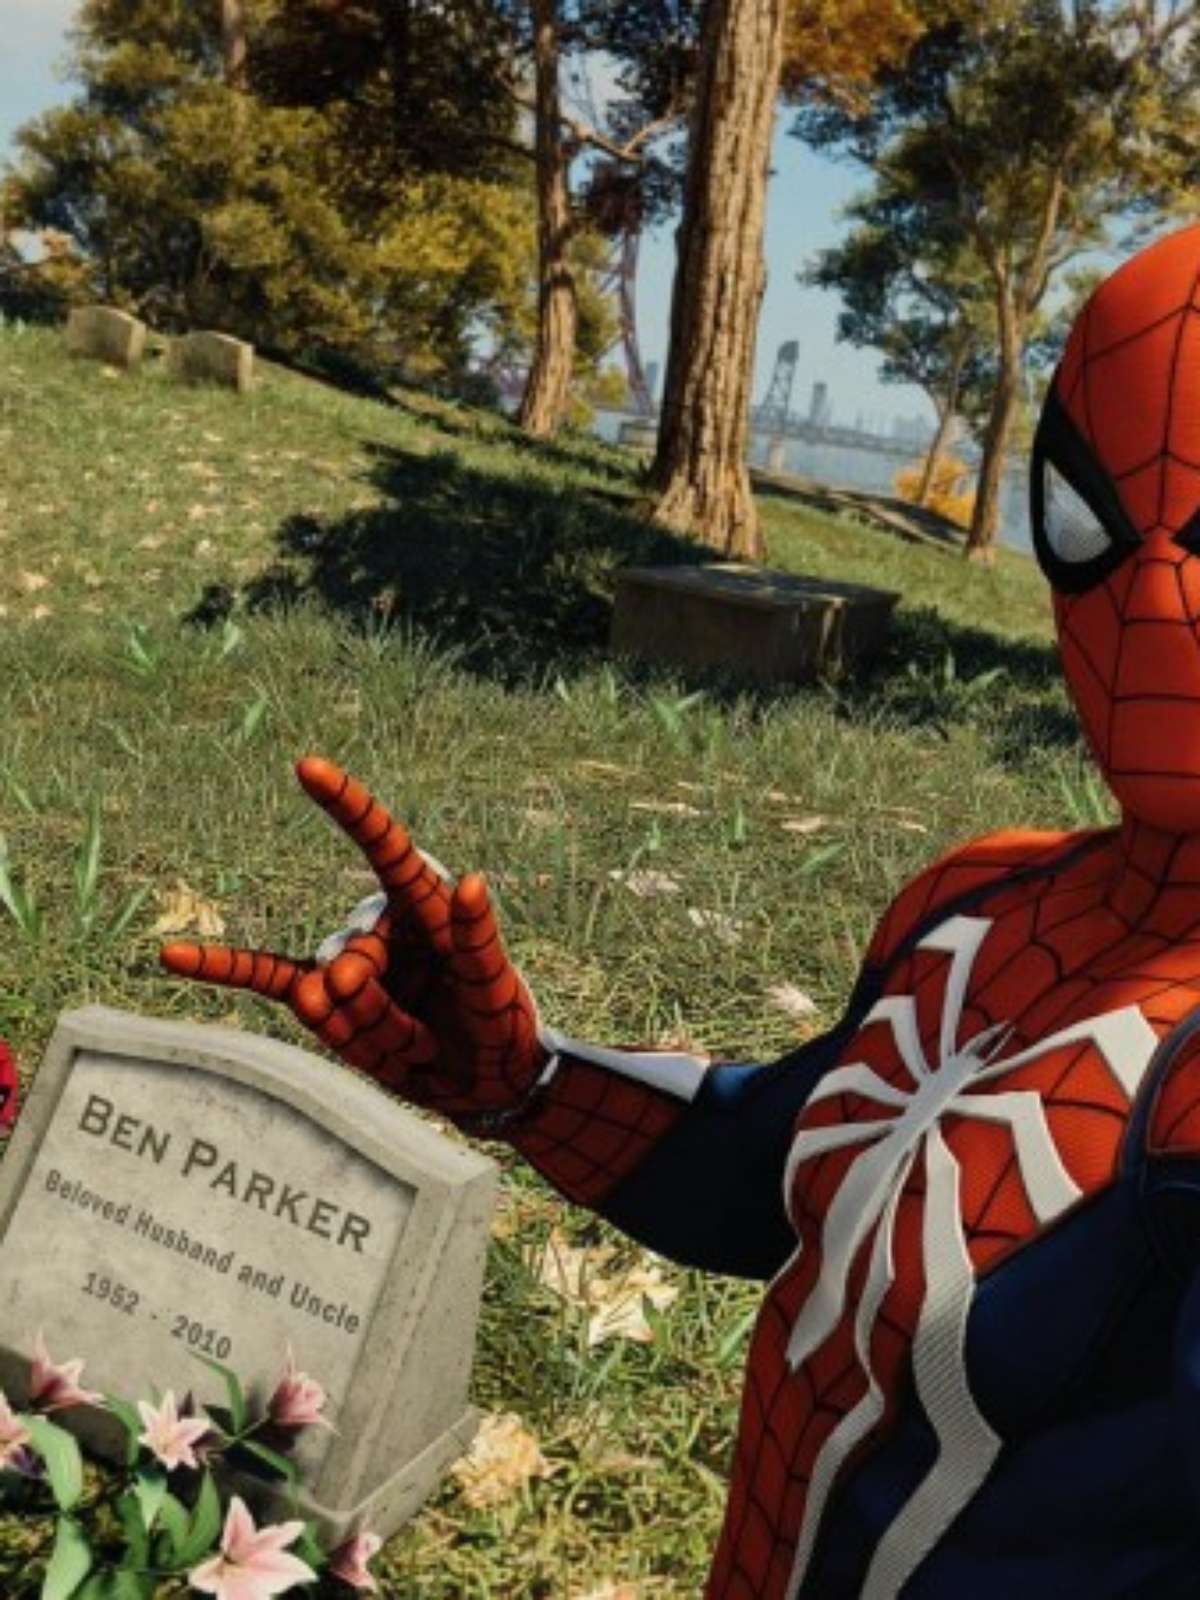 Marvel's Spider-Man | Onde está o túmulo do Tio Ben?